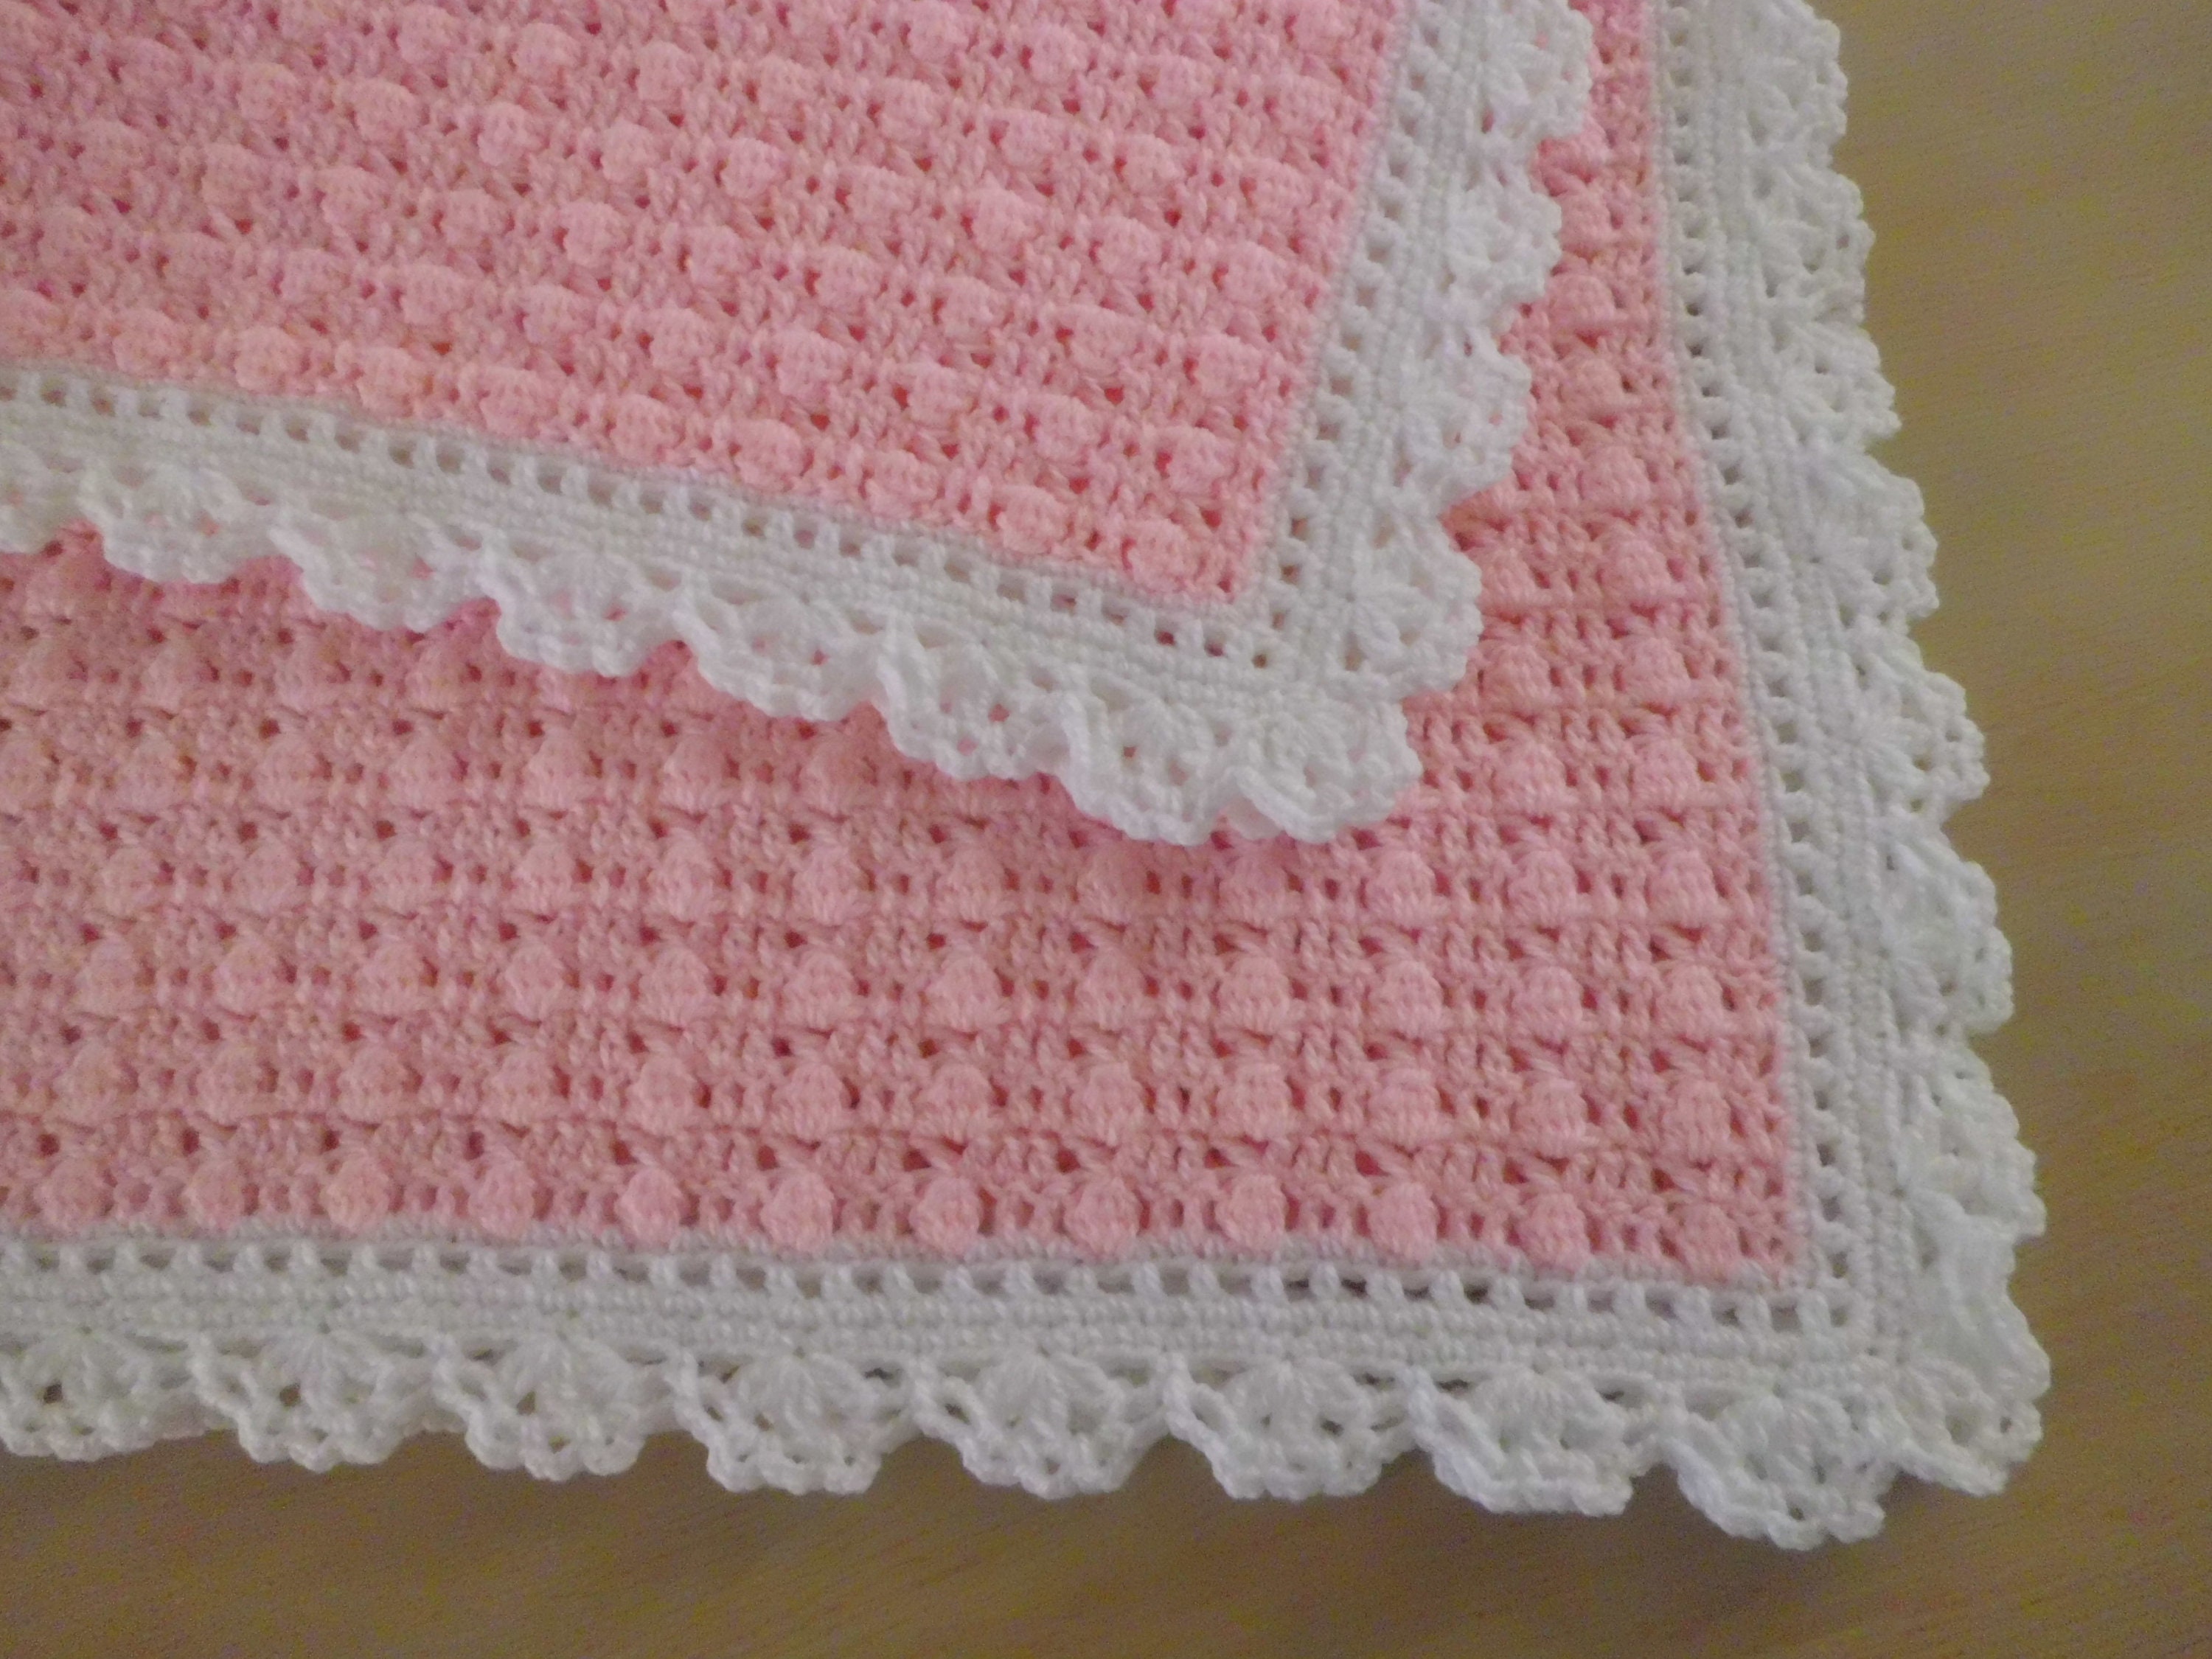 Tuto couverture bébé au crochet facile - How to make a baby blanket 